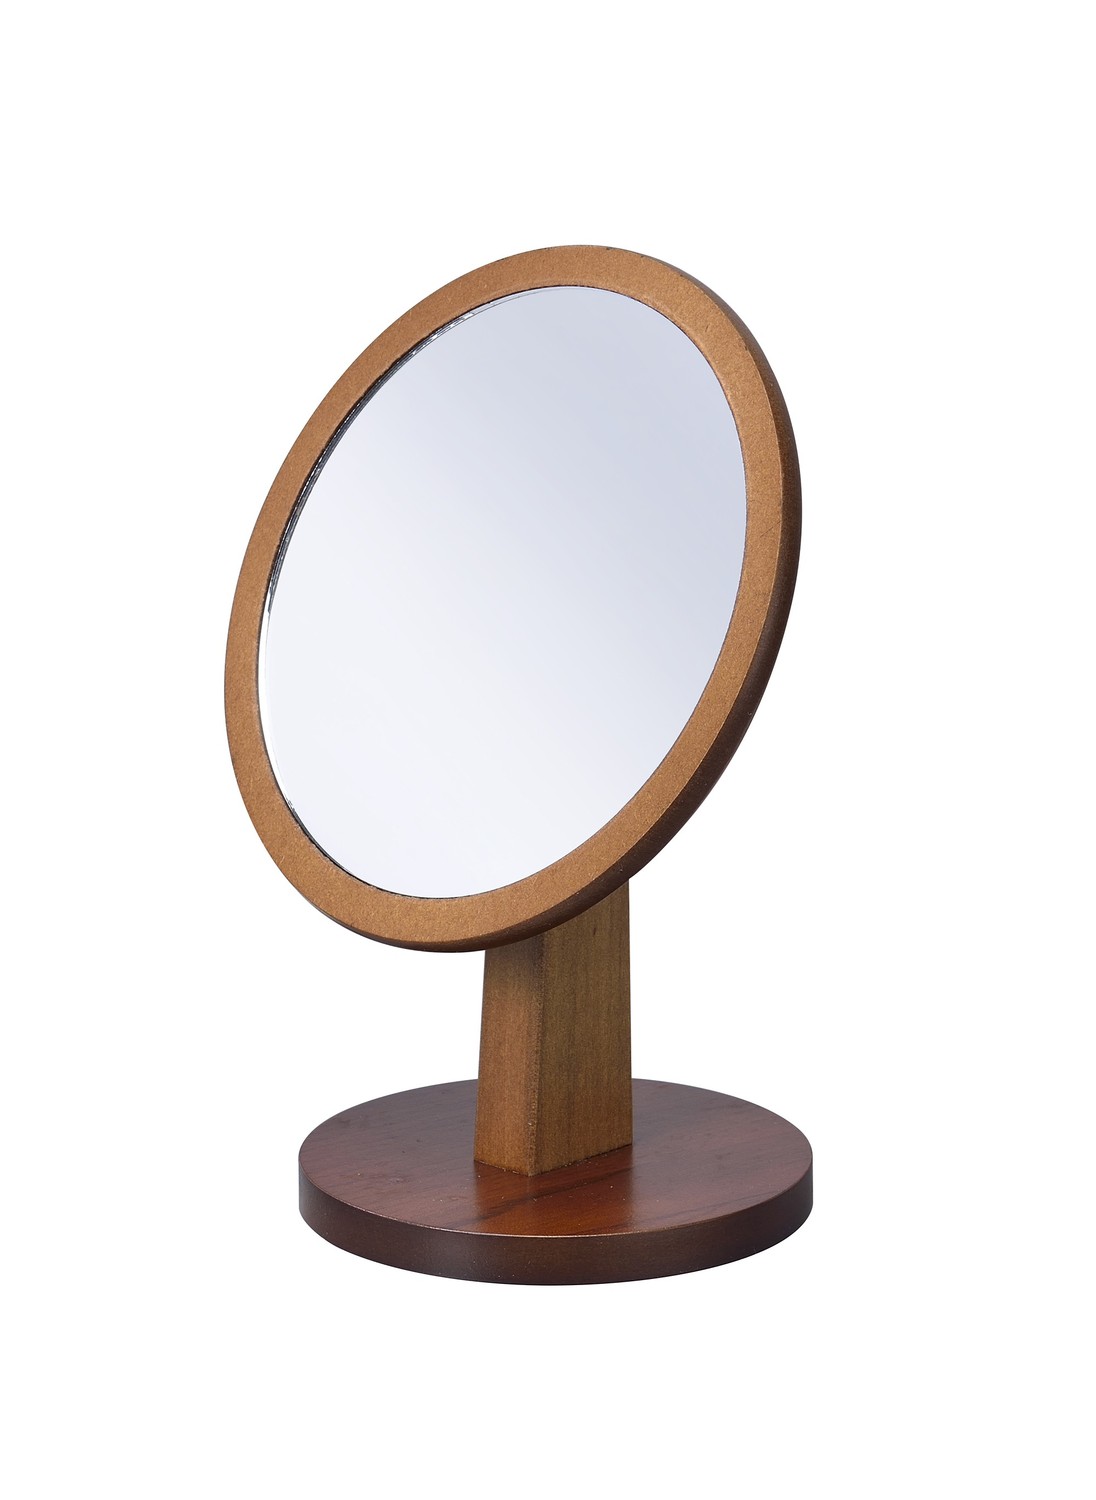 Walnut Finish Round Vanity Mirror on Pedestal